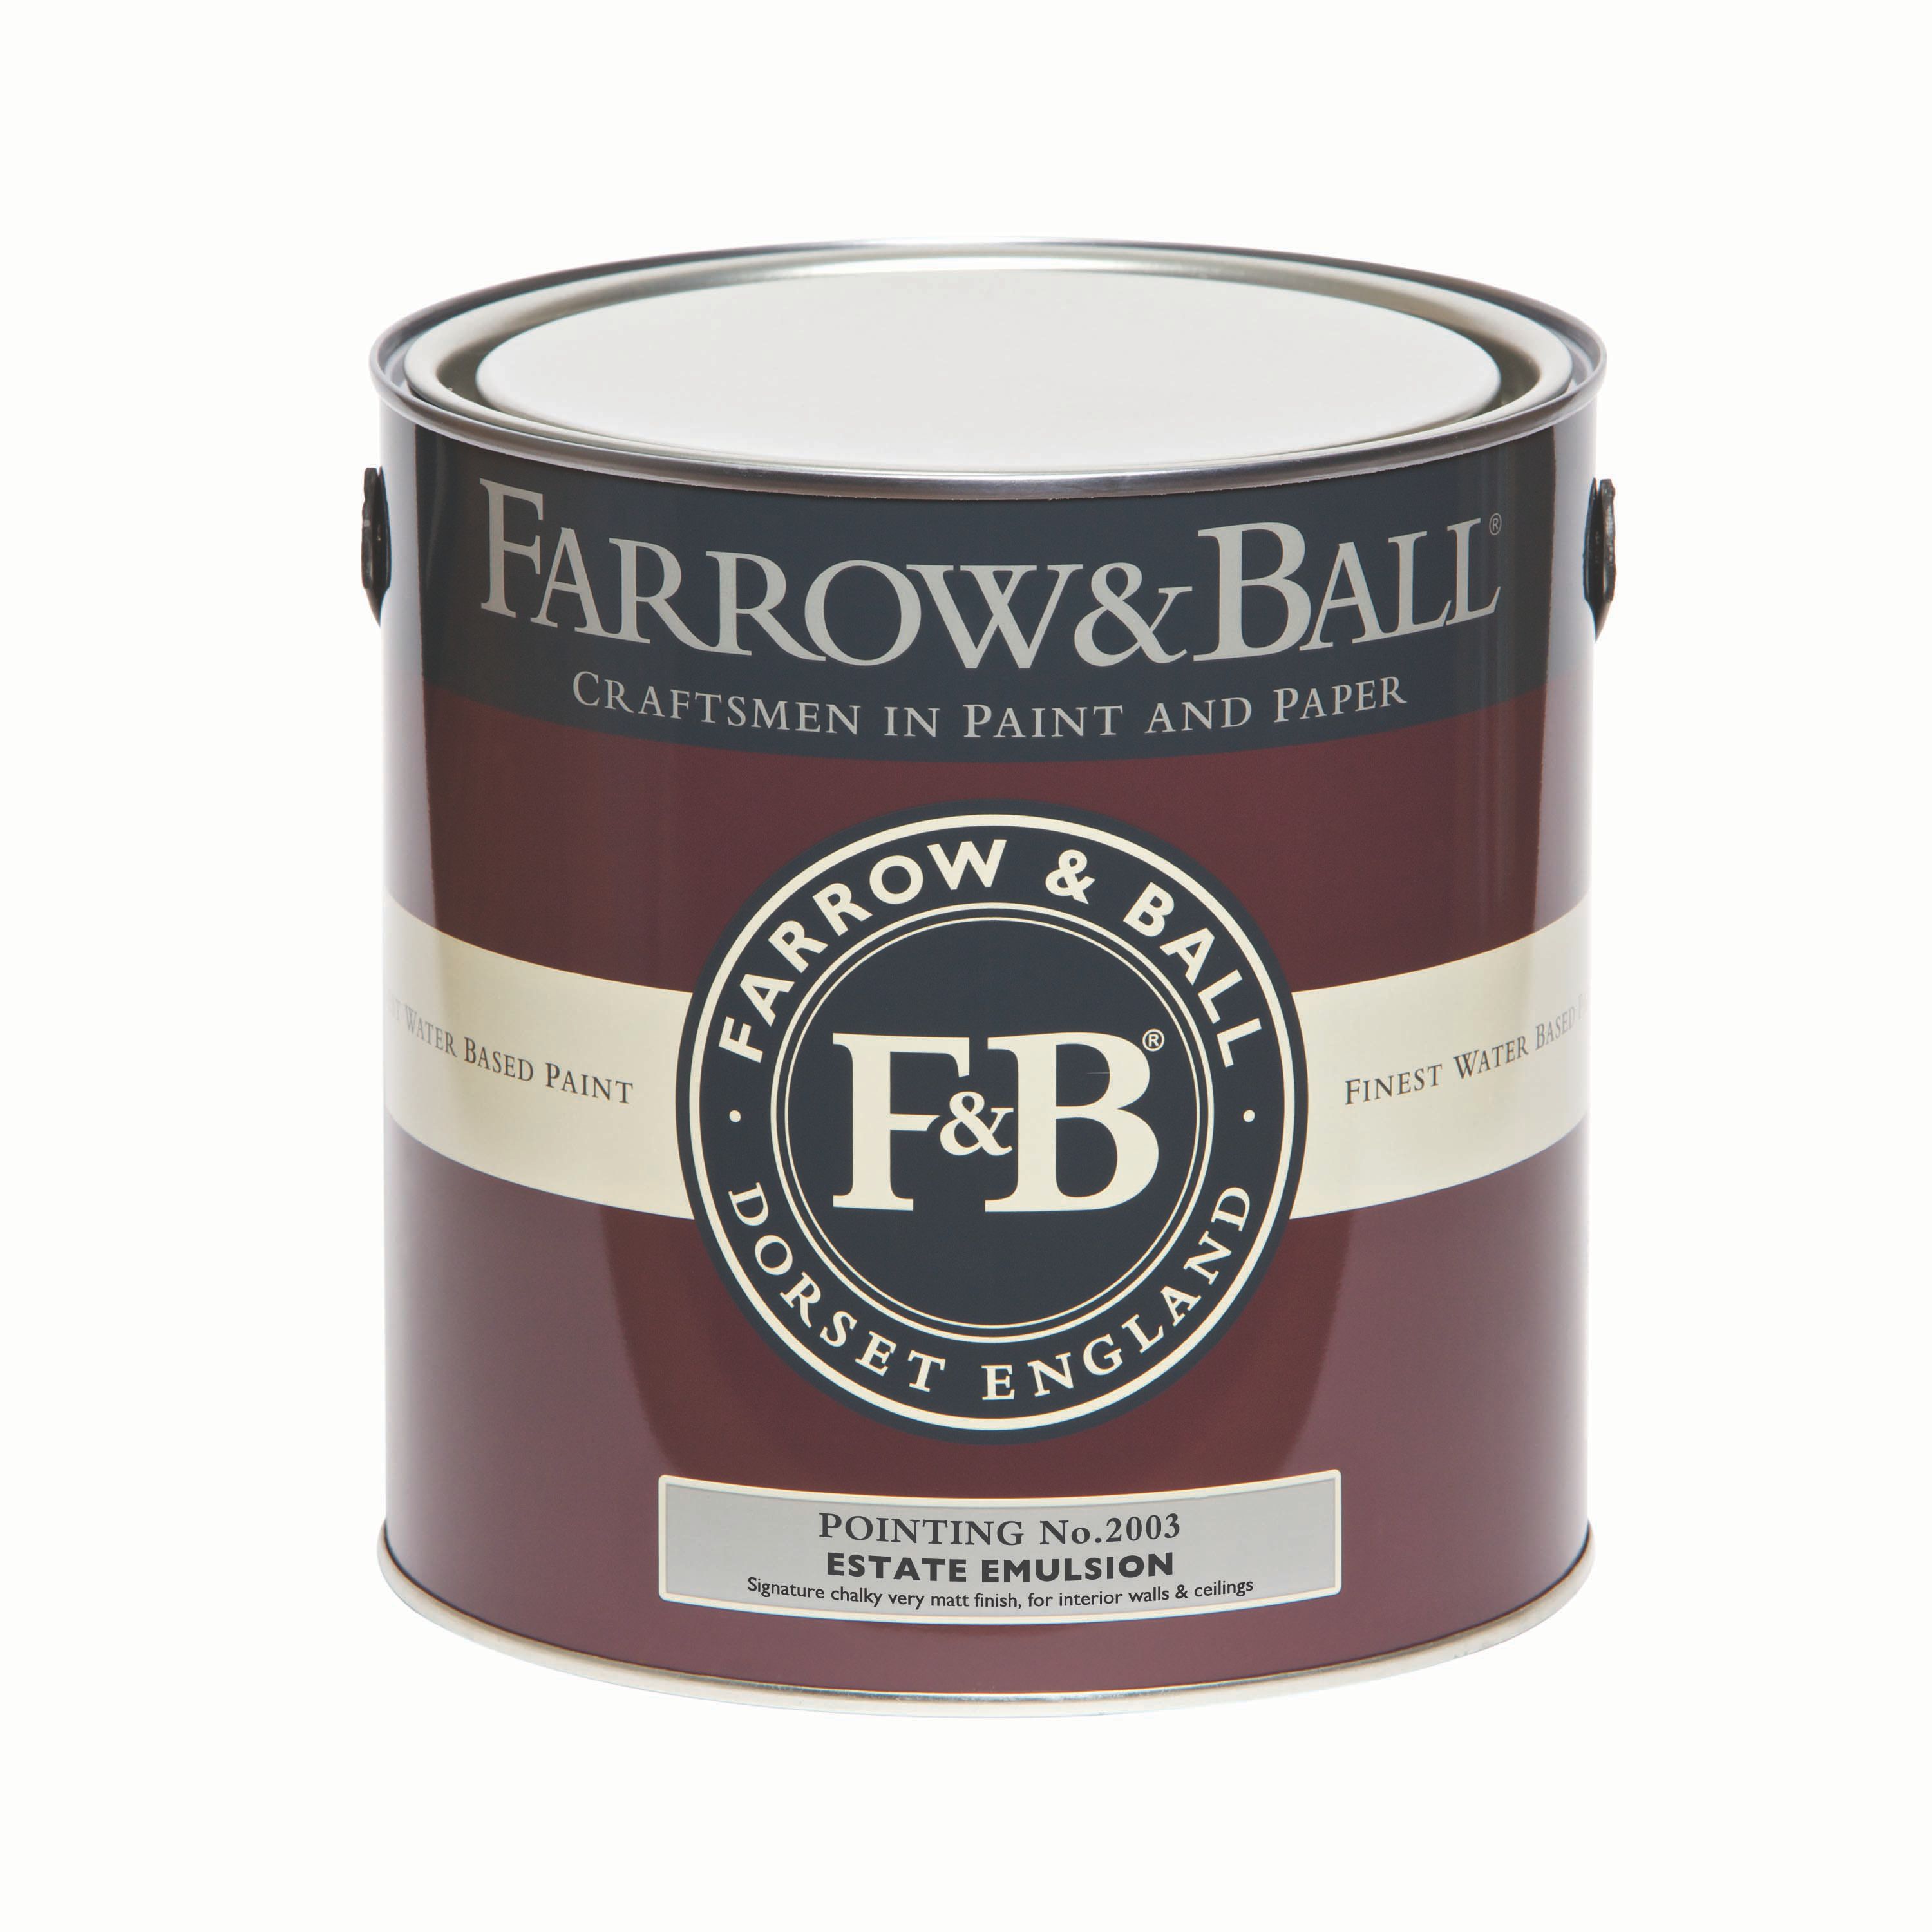 Farrow & Ball Estate Pointing No.2003 Matt Emulsion paint, 2.5L